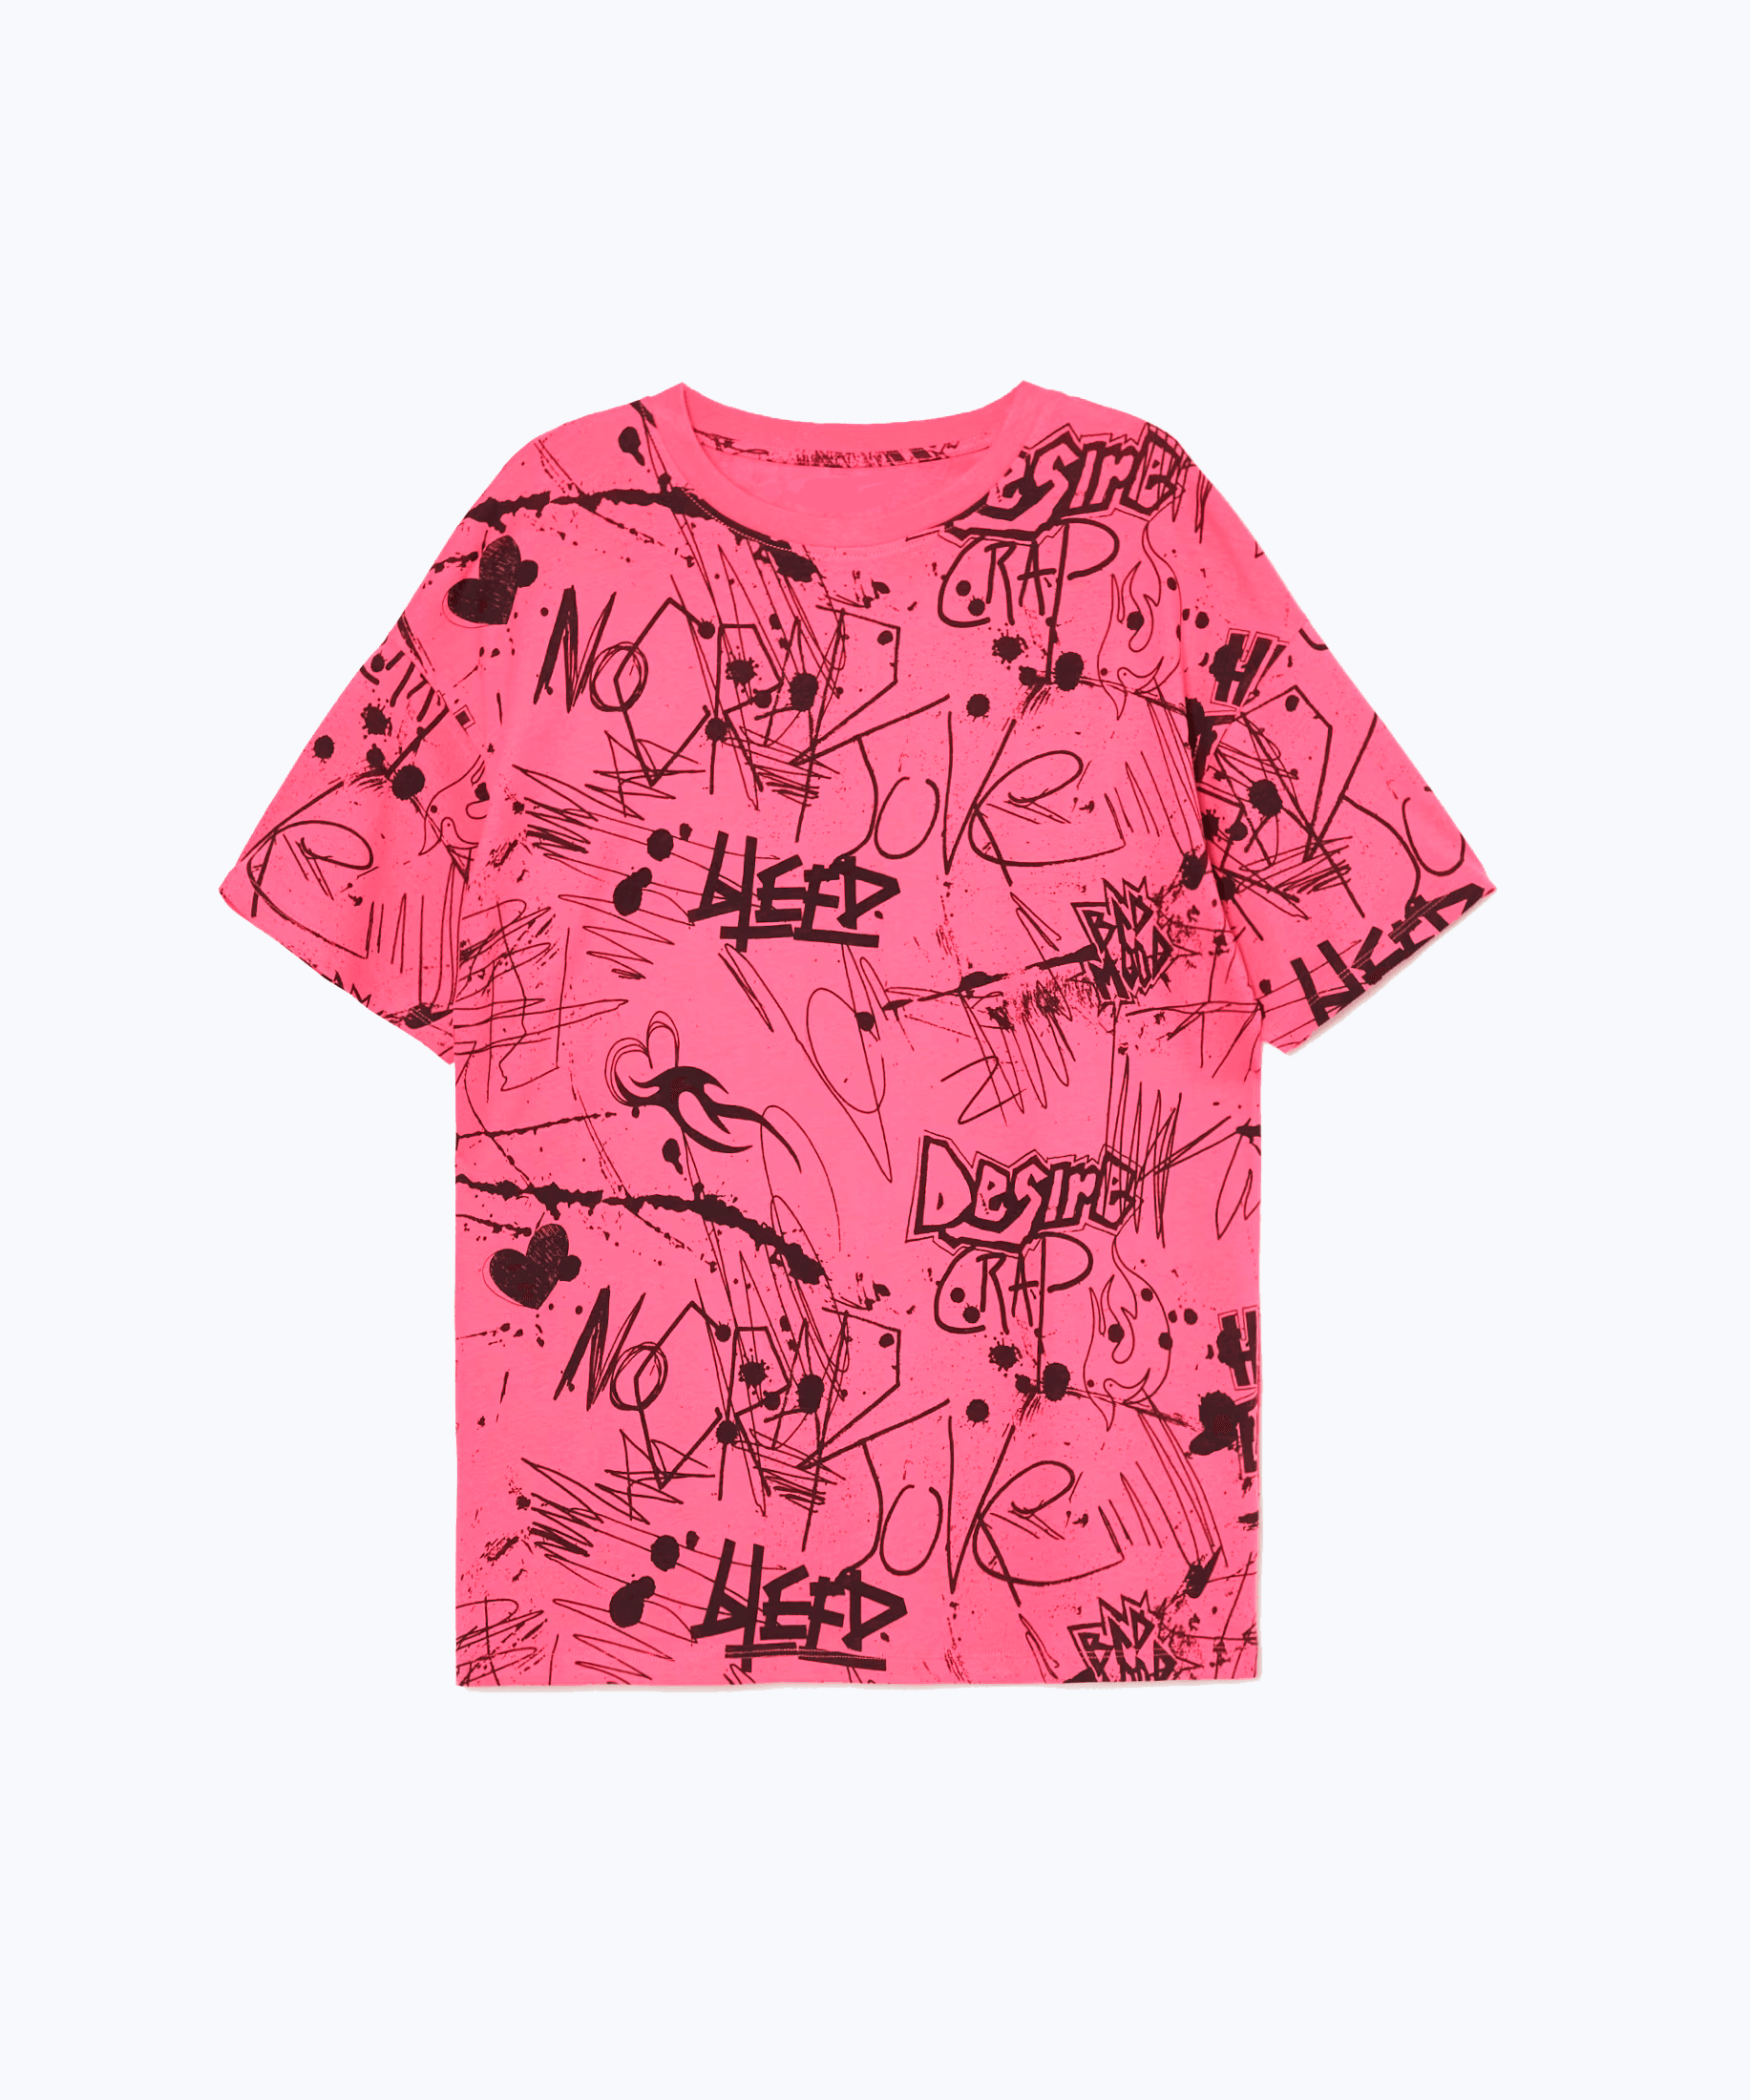 Pink graffiti T-shirt